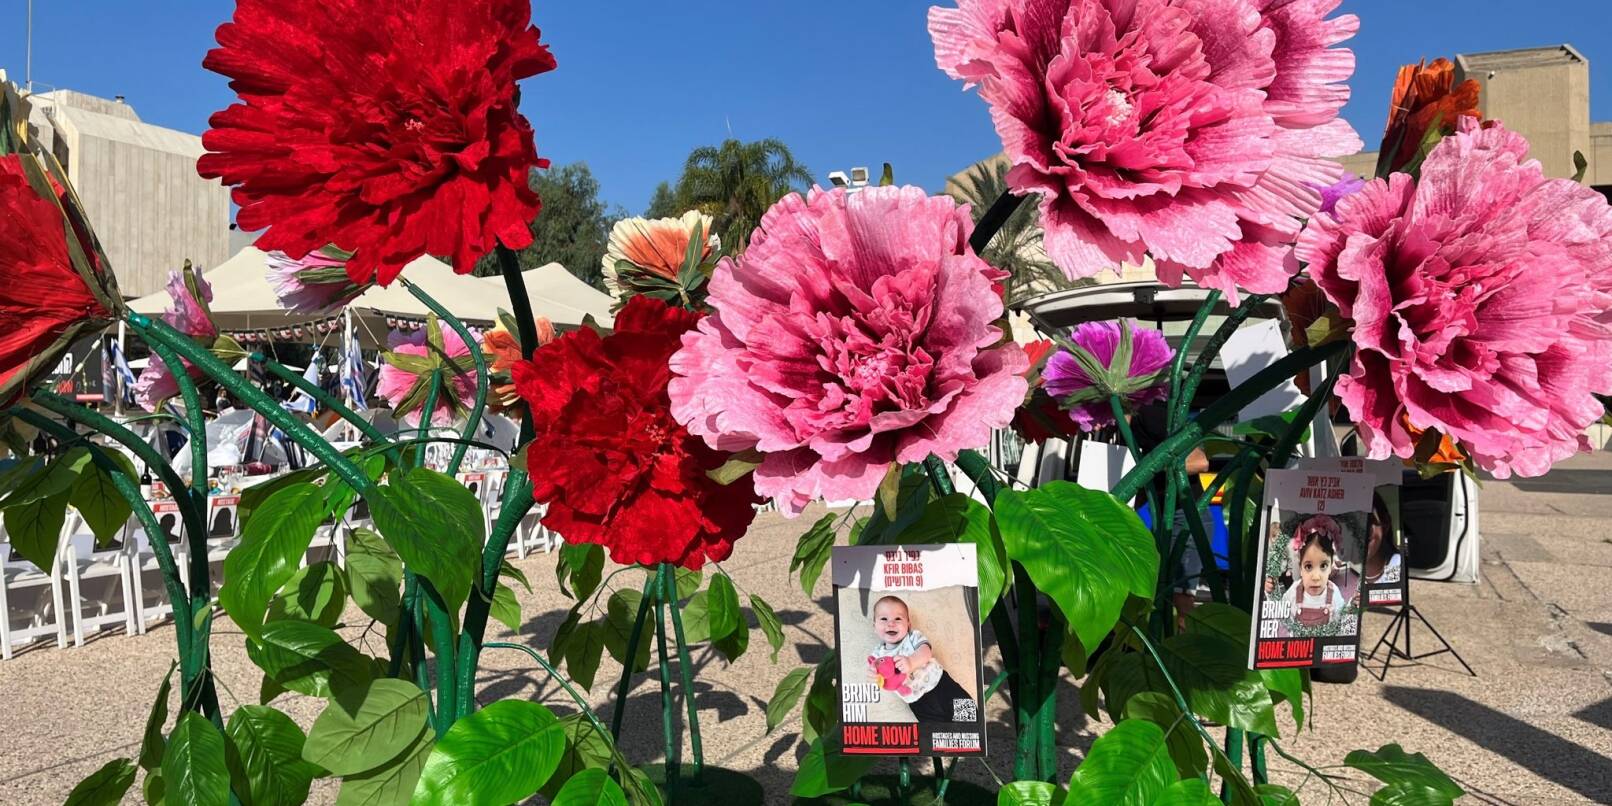 Blumen mit Bildern von Kindern, die seit dem Massaker der Hamas im israelischen Grenzgebiet am 07. Oktober als Geiseln gehalten und vermisst werden, stehen vor dem Kunstmuseum in Tel Aviv.